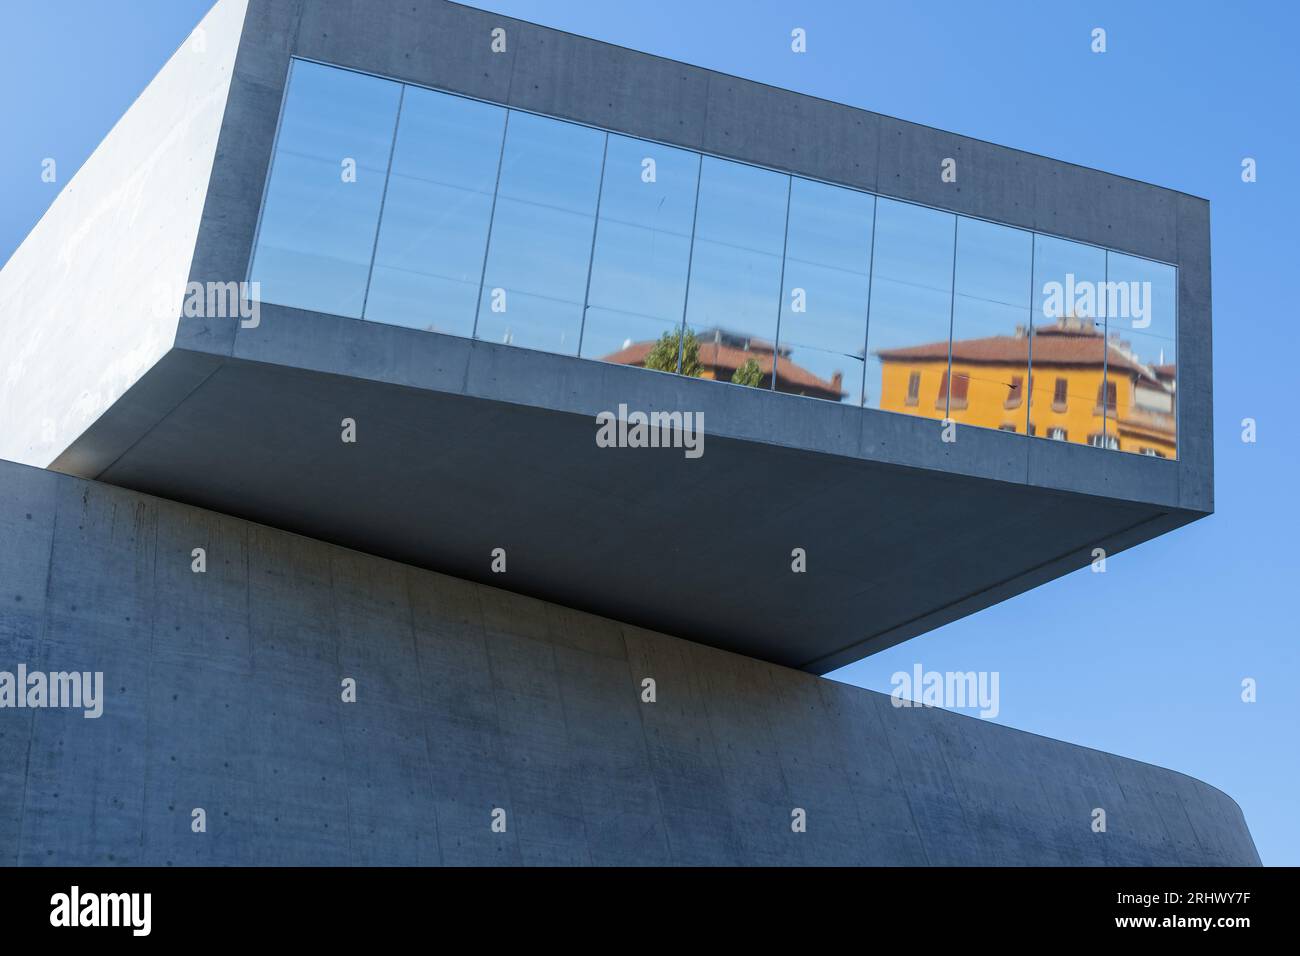 MAXXI musée d'art du XXI siècle emplacement dans le centre de Rome, Italie reflet dans la fenêtre de verre sur un bâtiment moderne à Rome. Banque D'Images